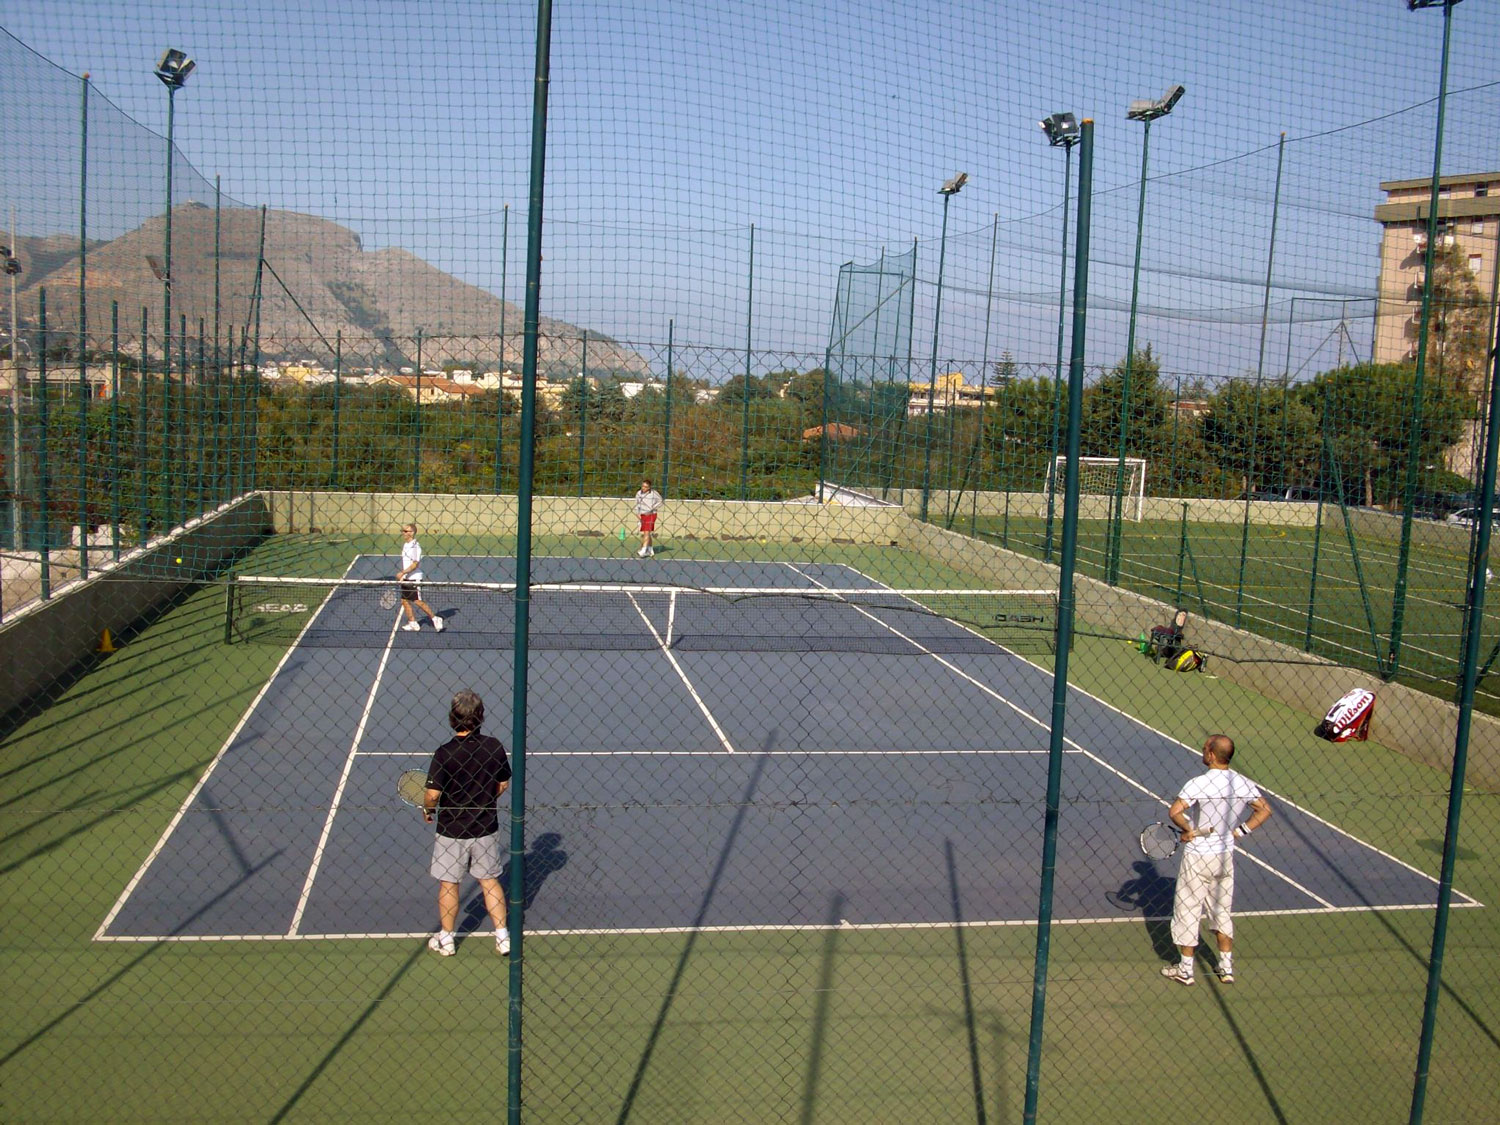 Filet de tennis: un élément important du terrain de tennis !